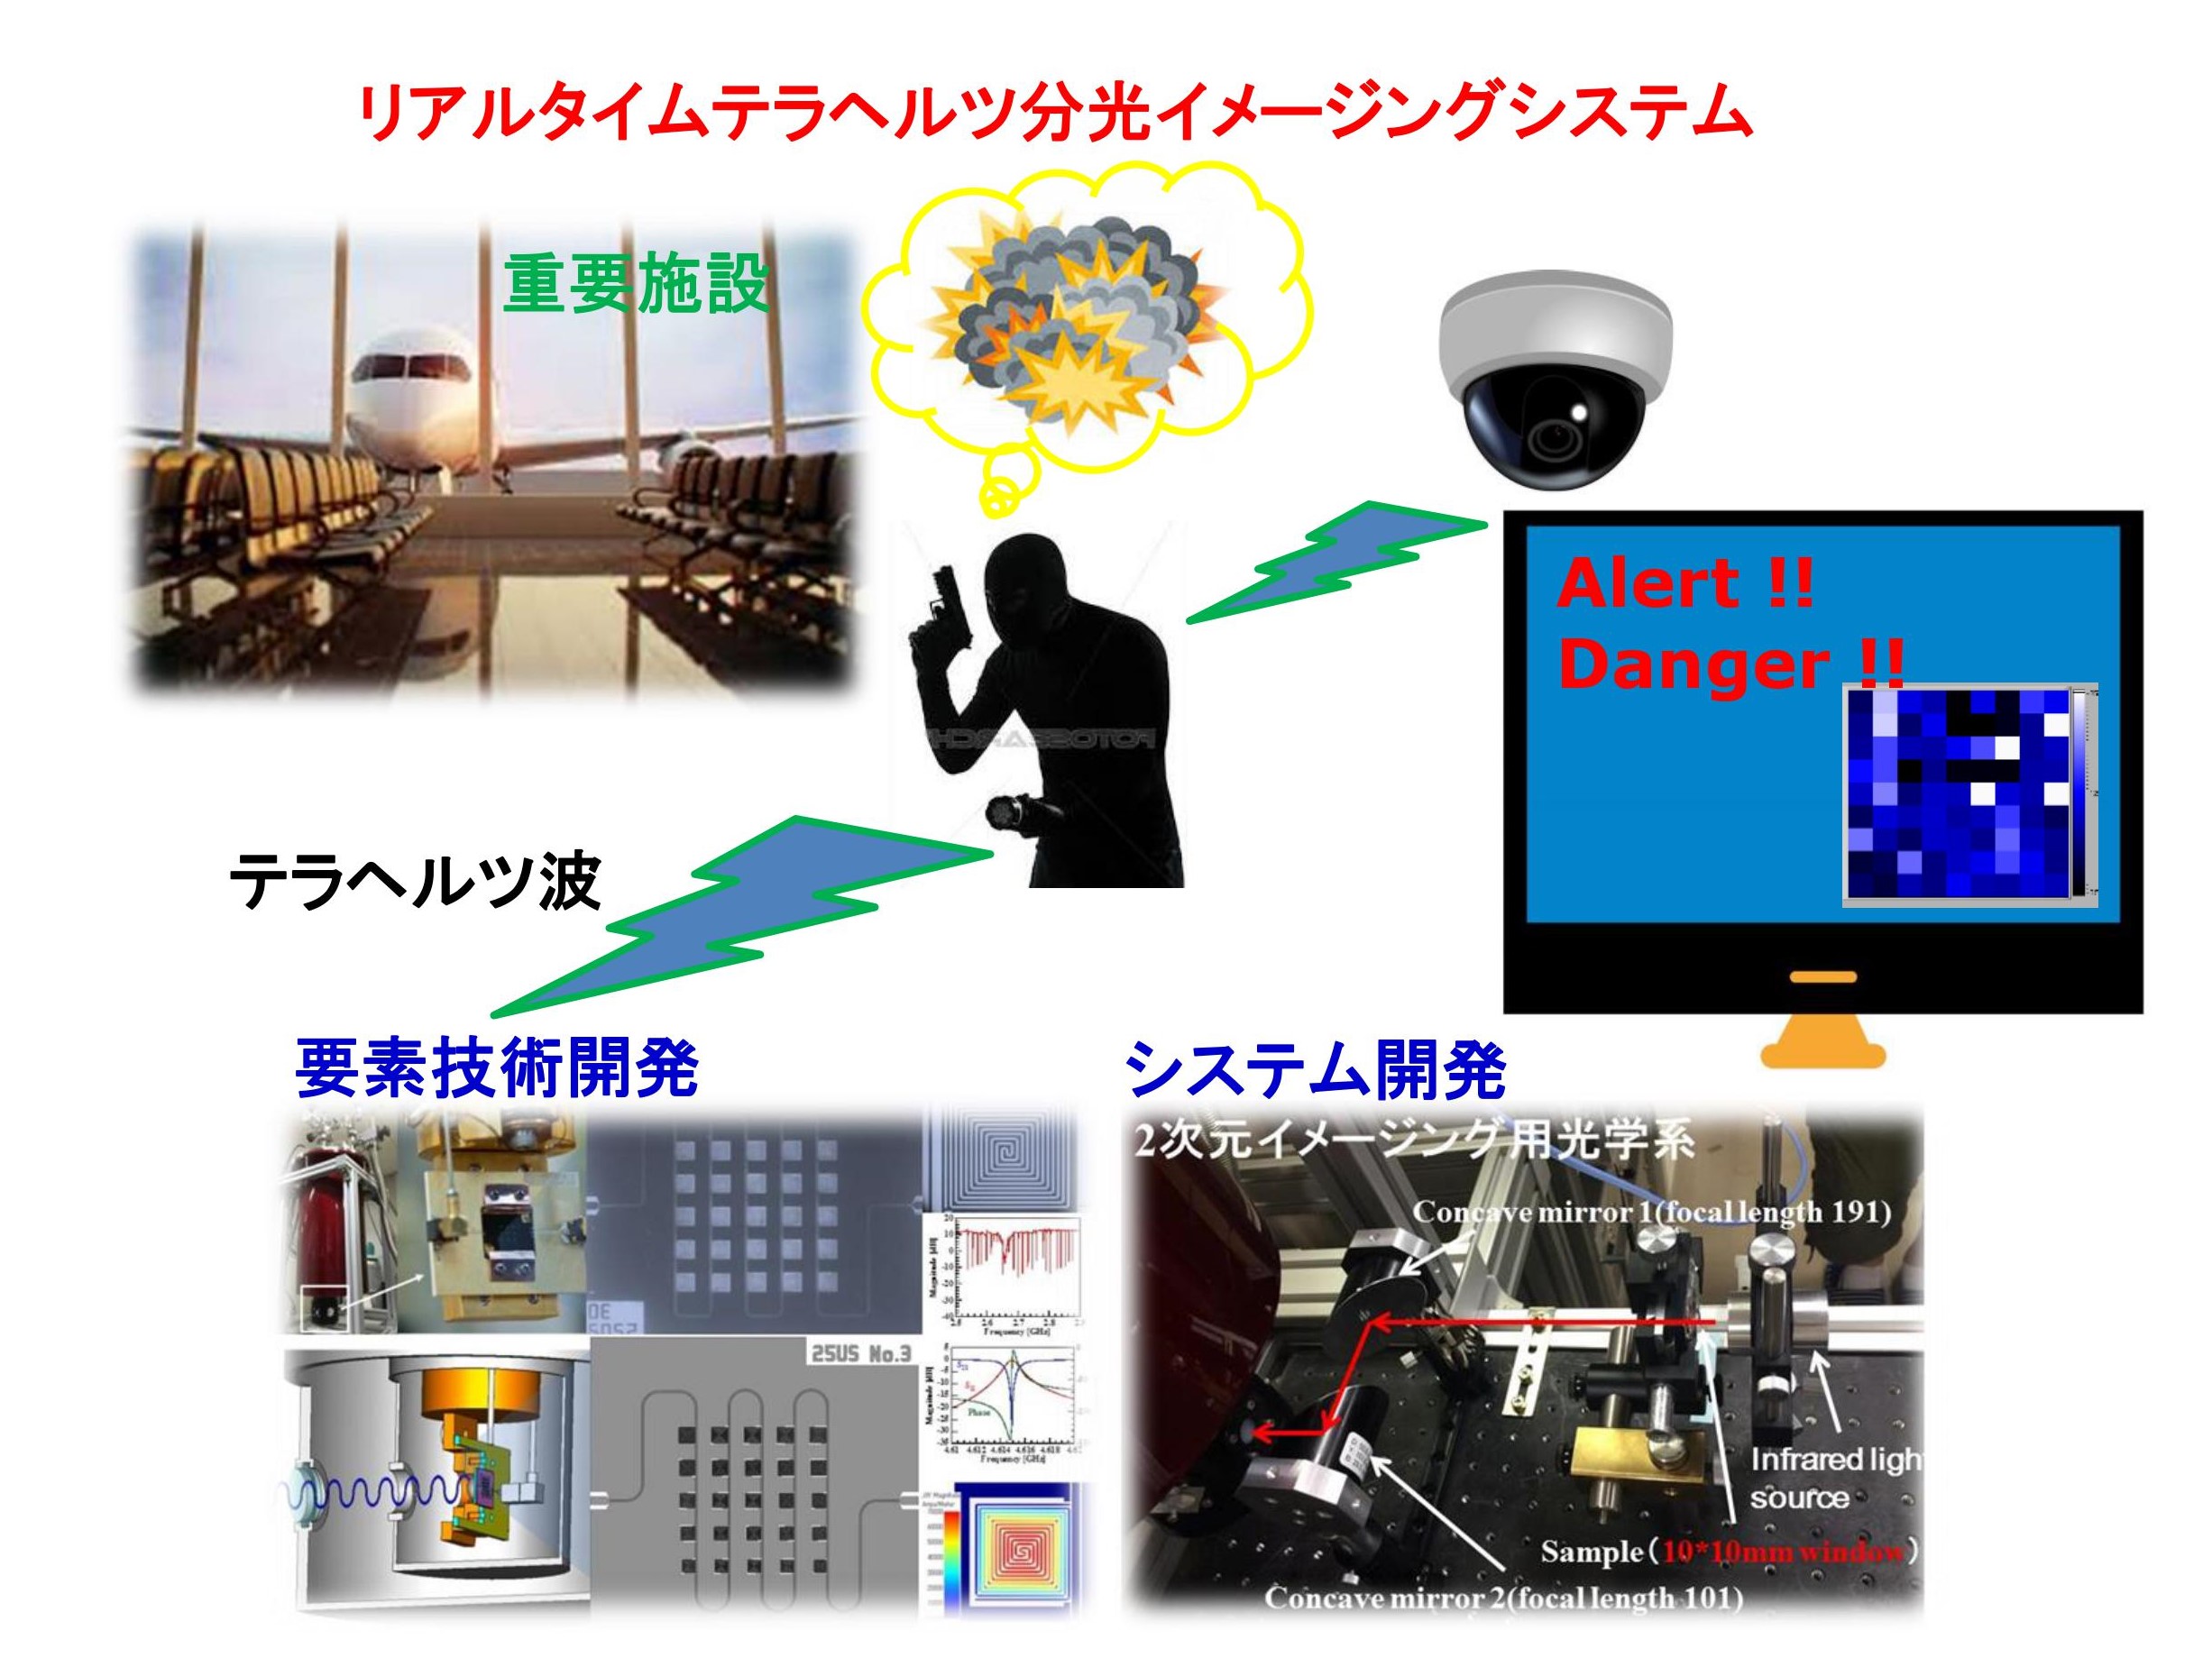 超伝導デバイスを利用したセキュリティーシステムのイメージの画像